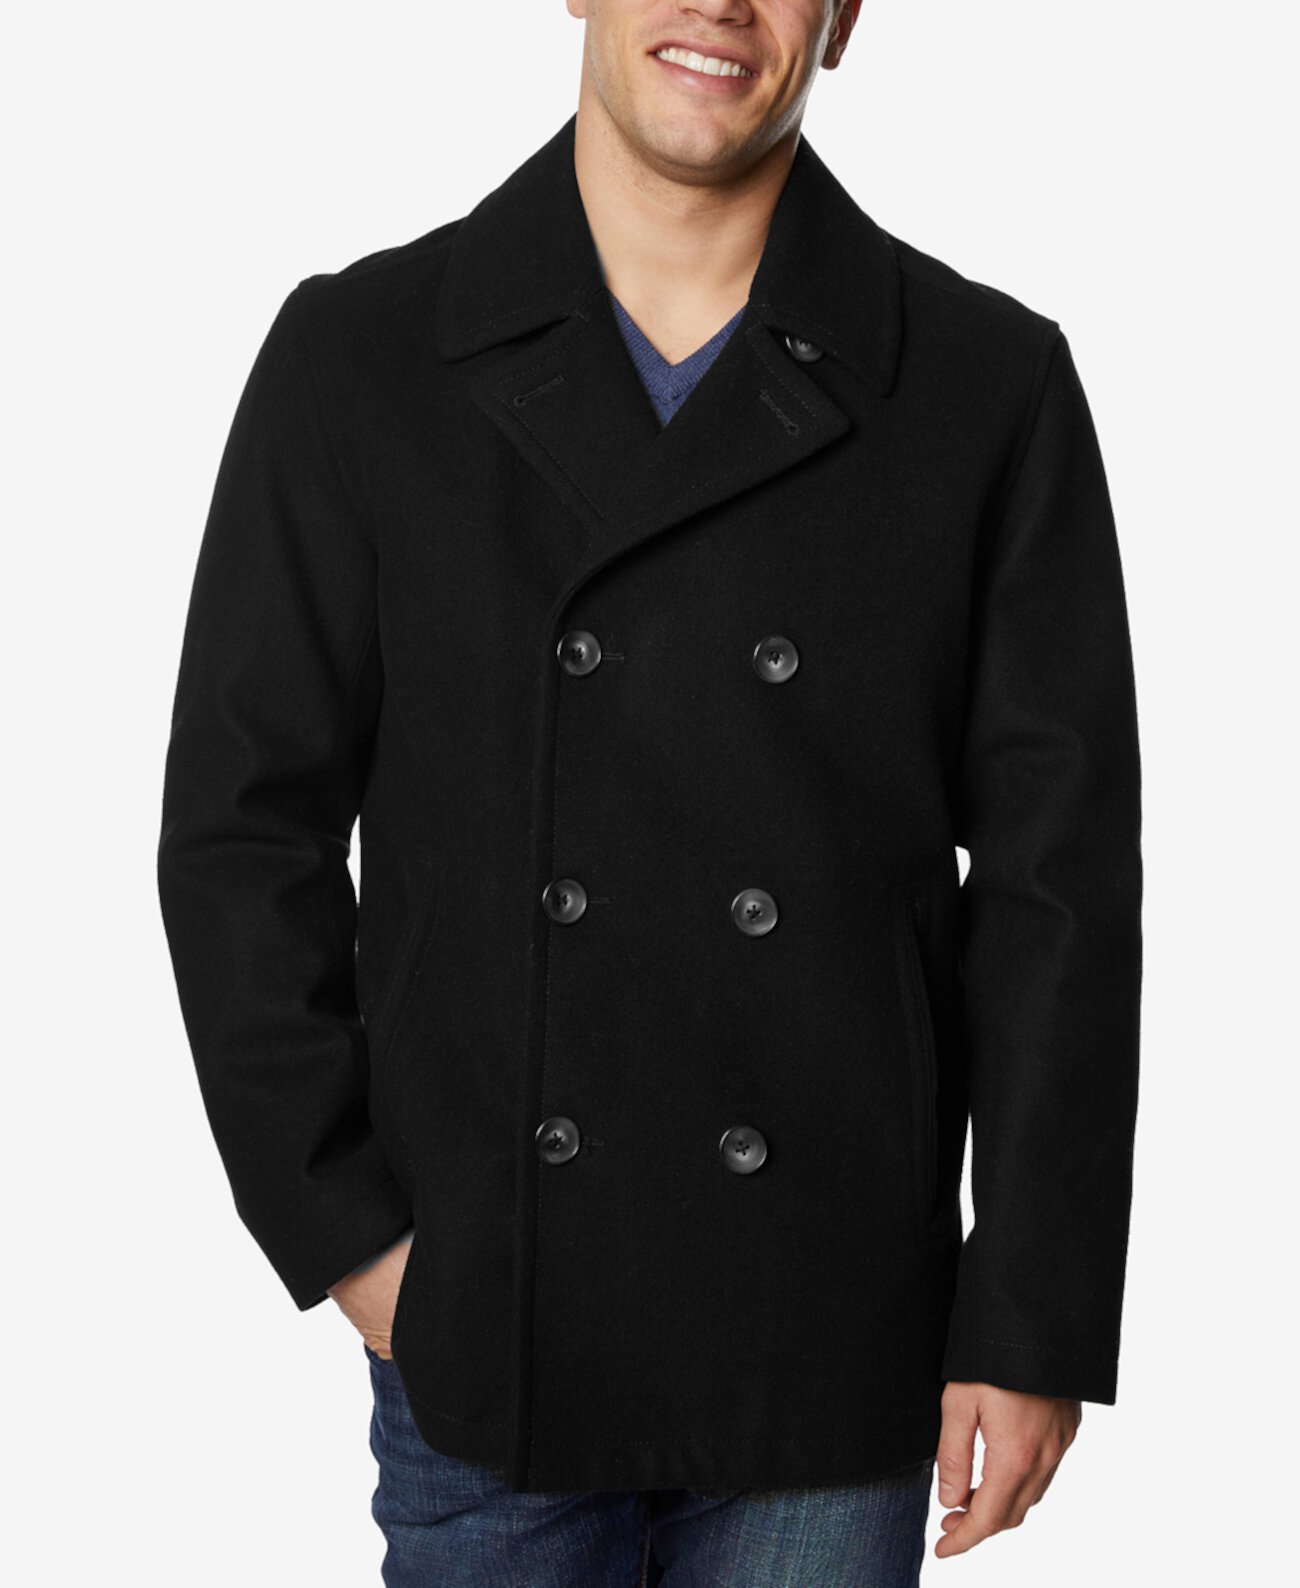 Мужской пальто-пиджак Nautica из шерсти и с воротником на пуговицах Nautica